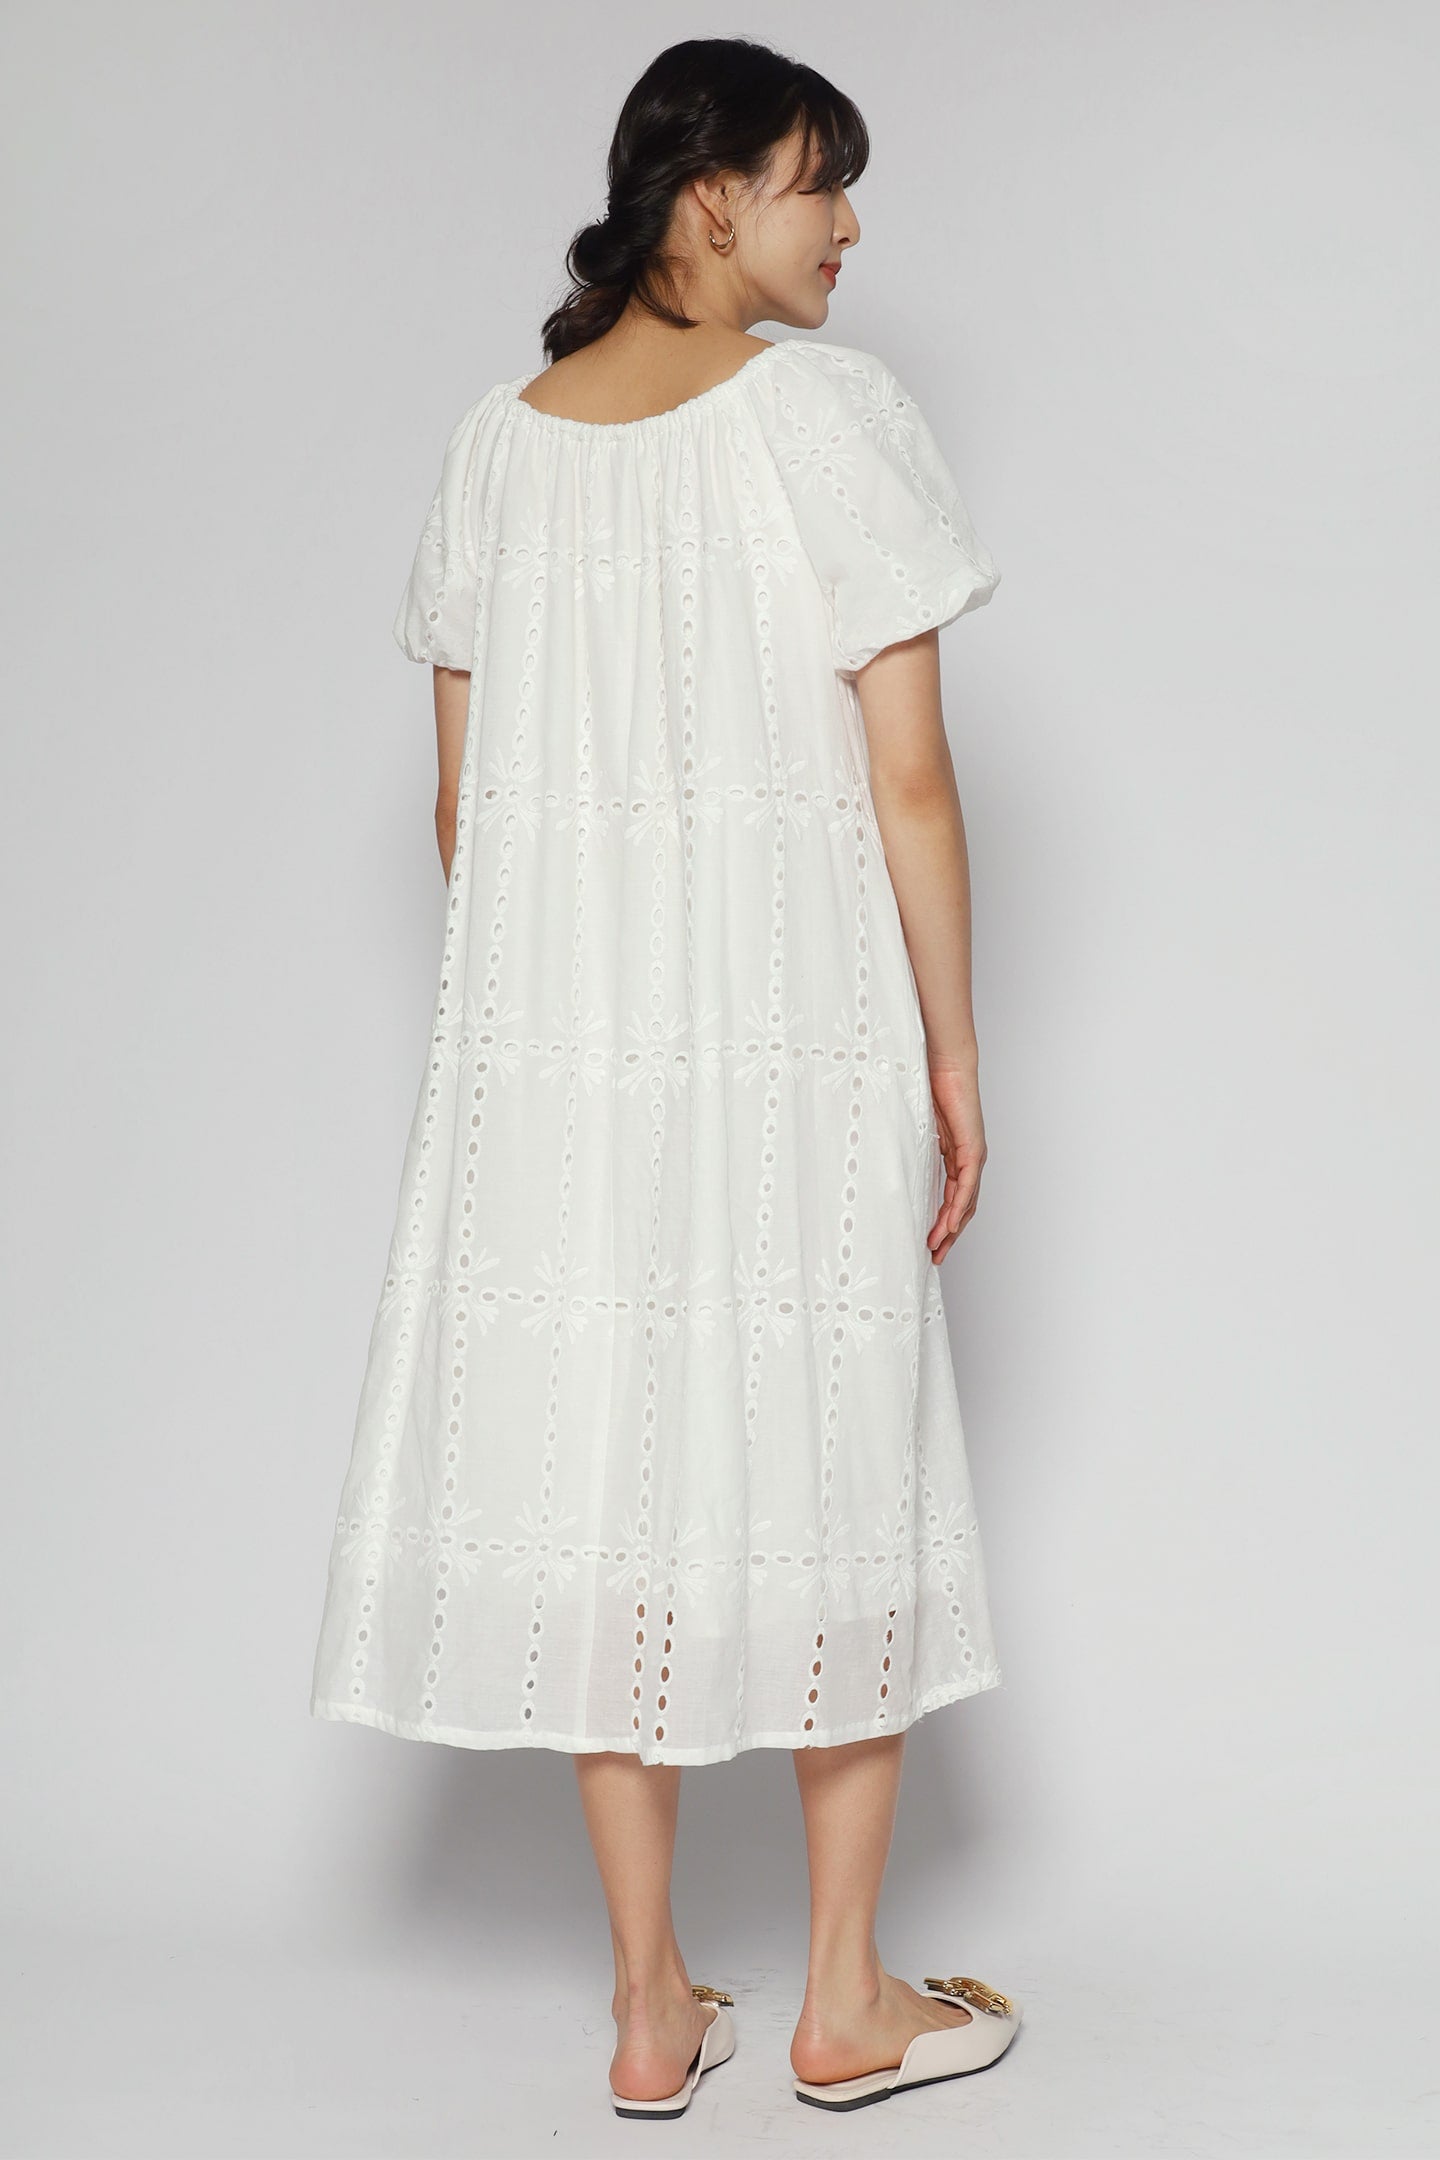 Anakin Dress in White Crochet